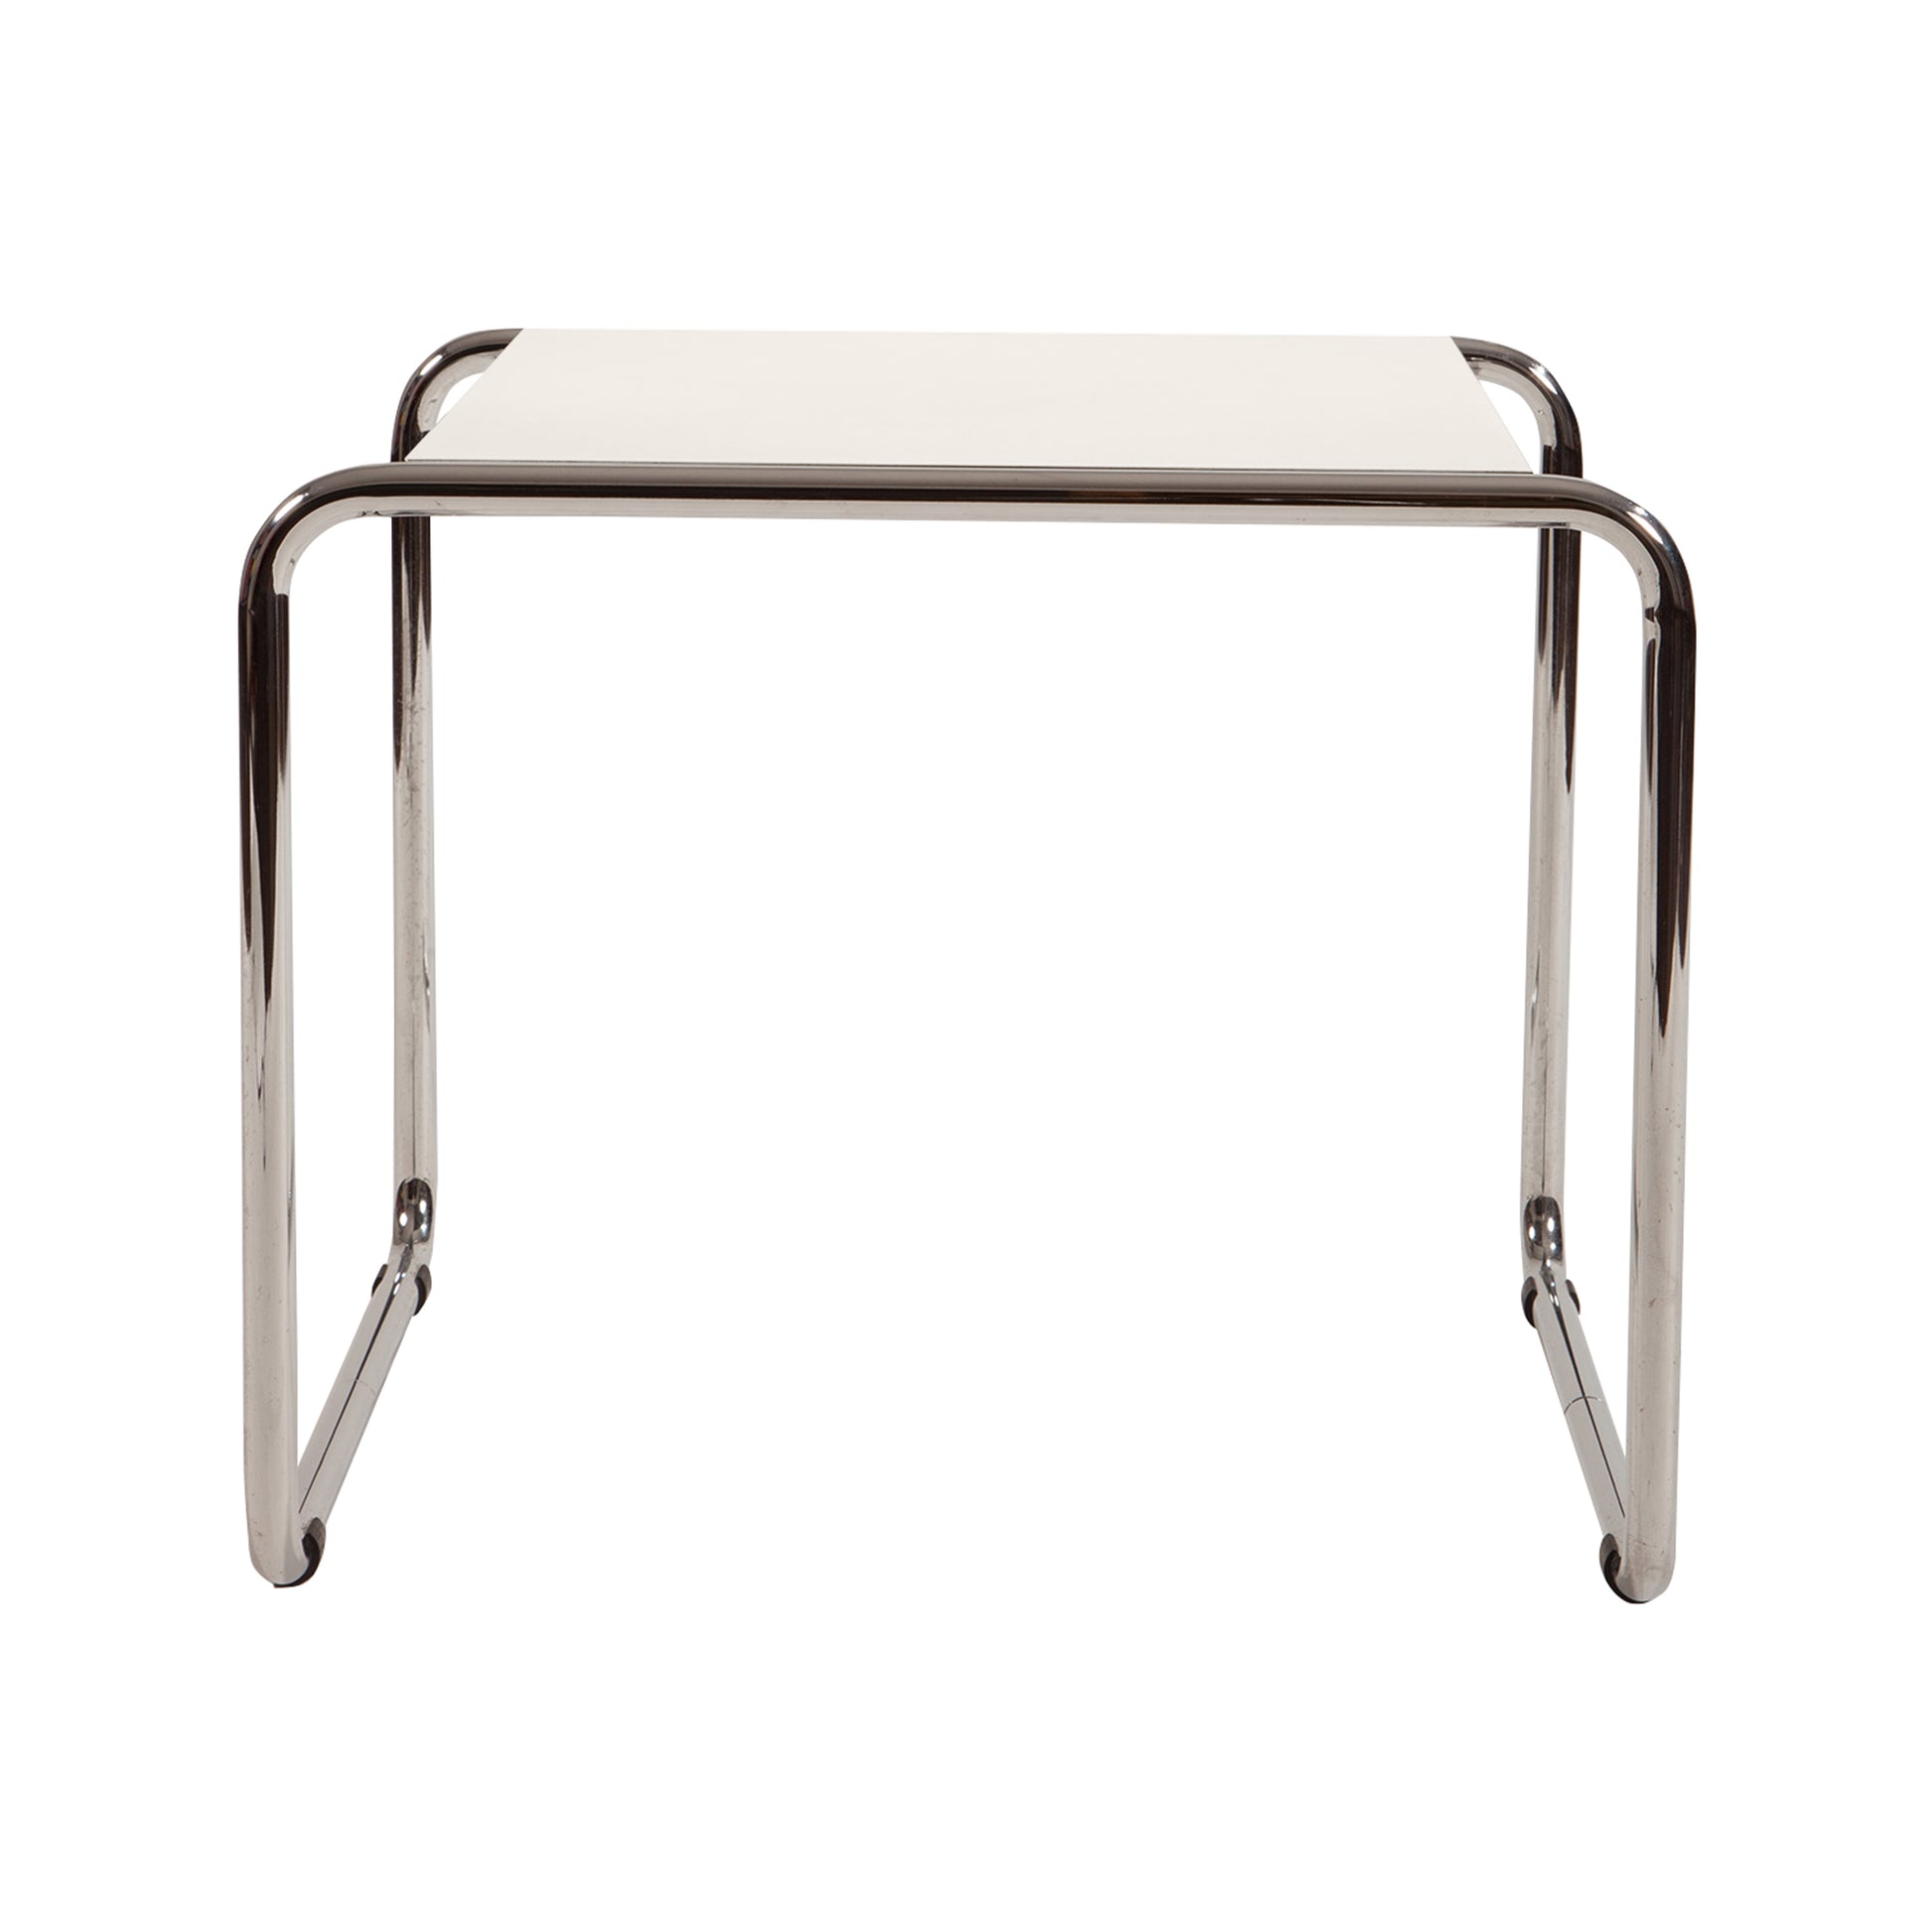 Laccio table style | White | Side